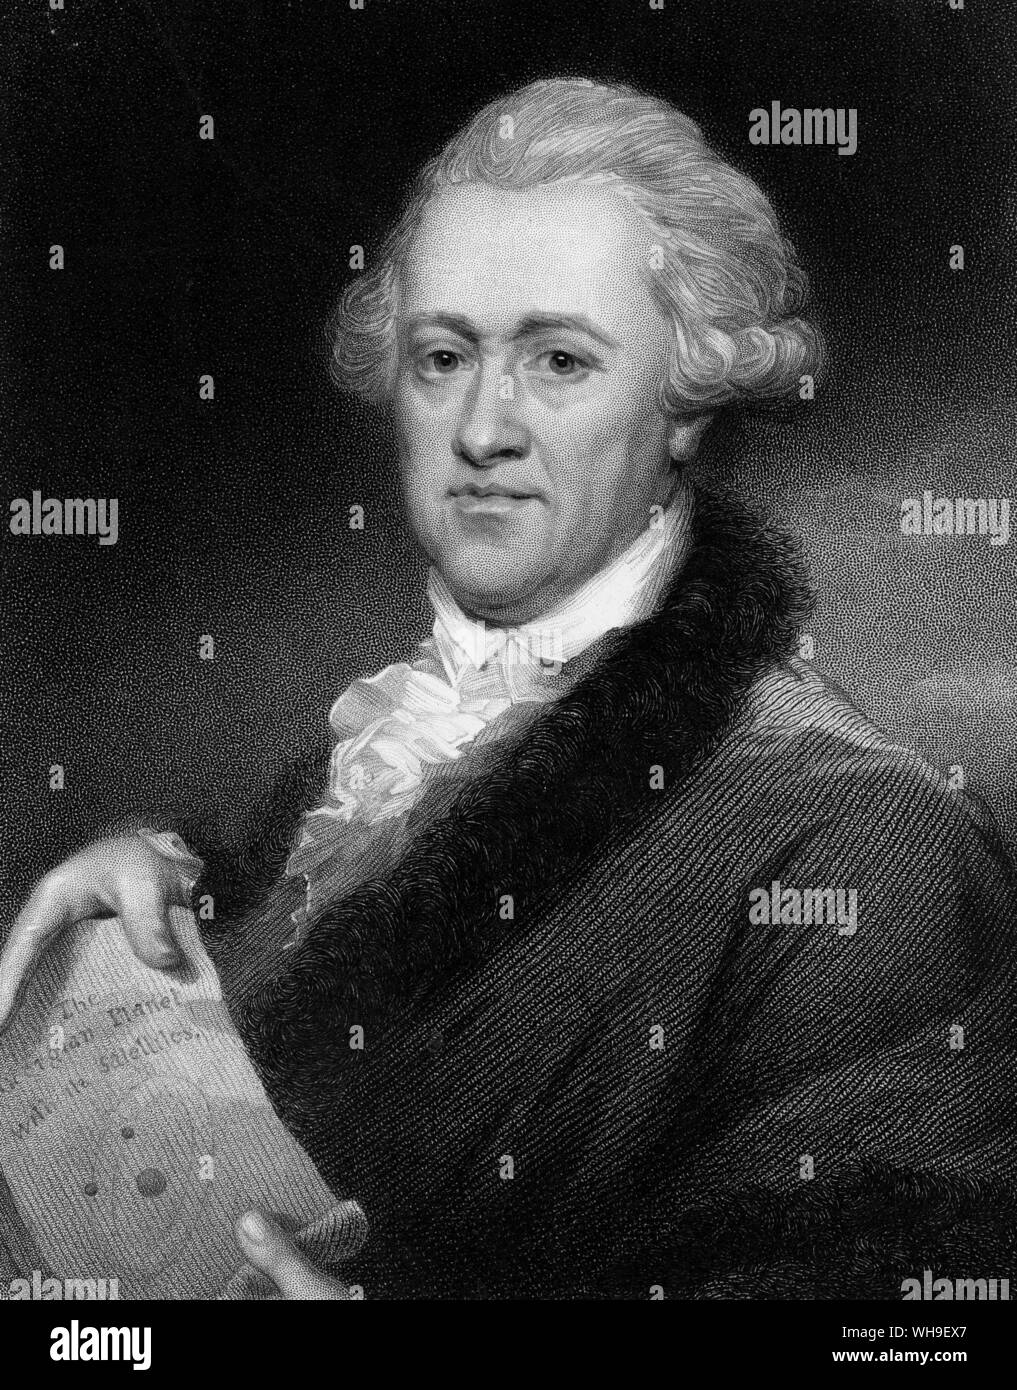 William Herschel (1738-1822). Deutschland geborener englischer Astronom. Hew war ein geschickter Teleskop Teekocher und Pionier der Erforschung der binäre Sterne und Nebel. Er entdeckte den Planeten Uranus im Jahre 1781. Stockfoto